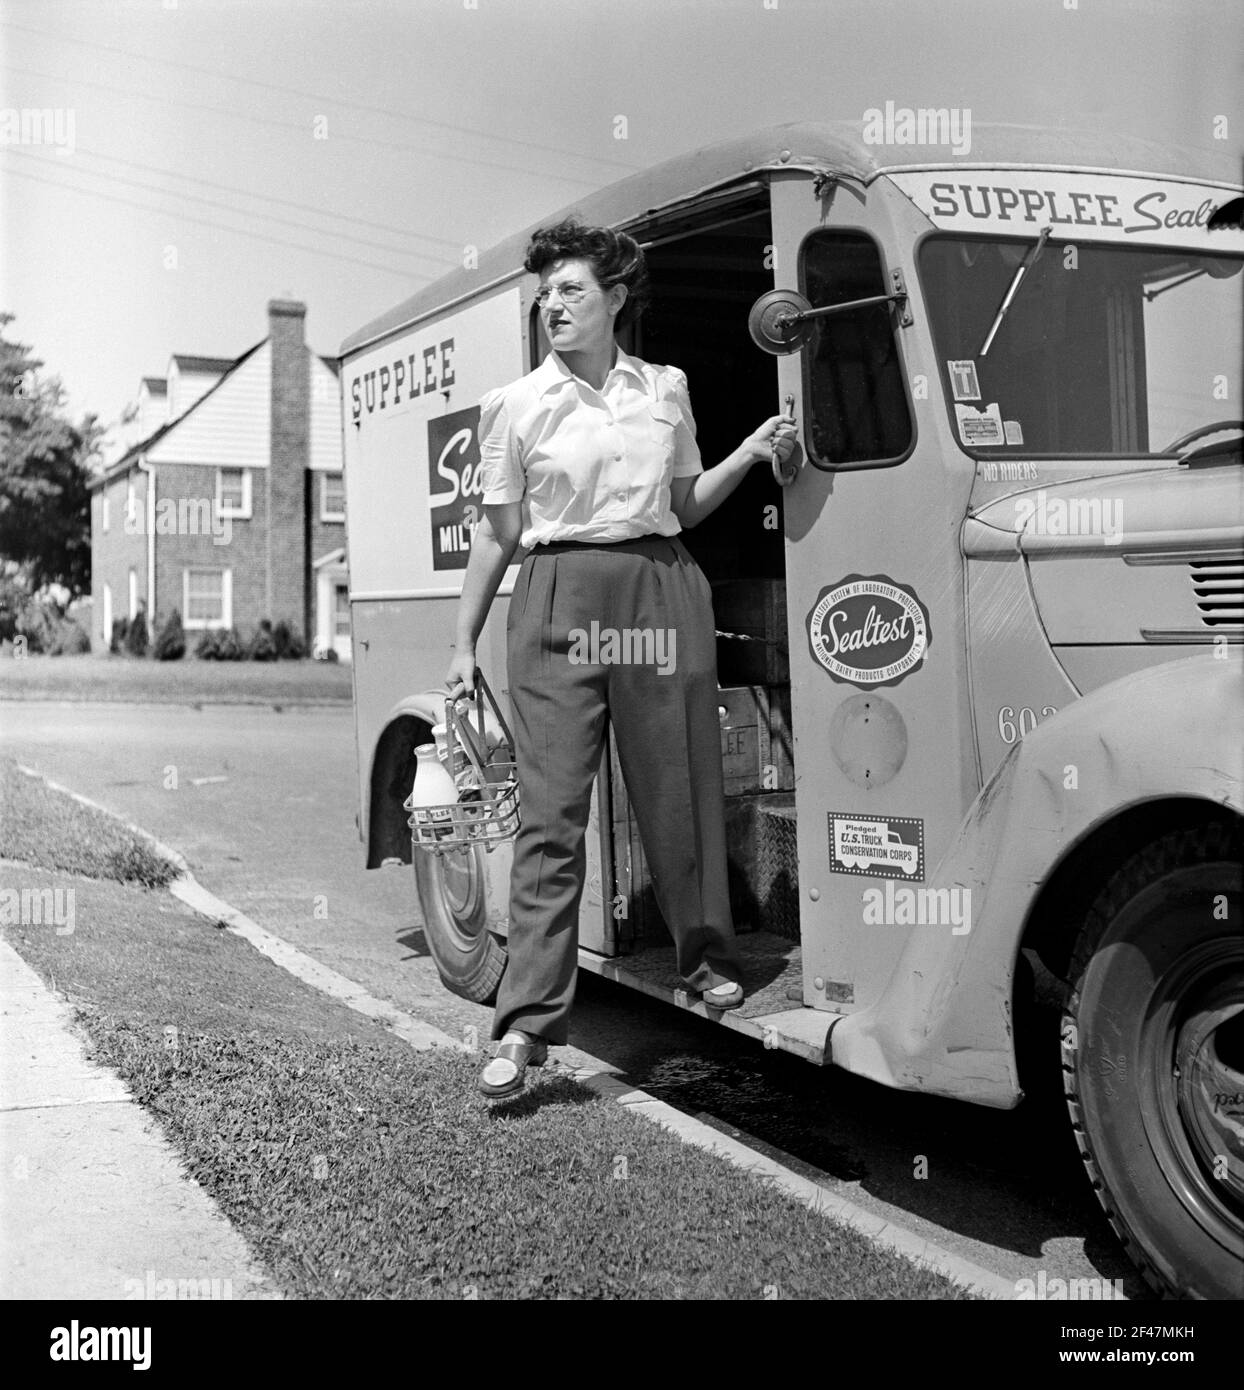 Miss Pearl Gold, une des nombreuses femmes qui travaillent actuellement pour la Supplee-Wills-Jones Milk Company, Bryn Mawr, Pennsylvanie, Etats-Unis, Jack Delano, U.S. Office of War information, juin 1943 Banque D'Images